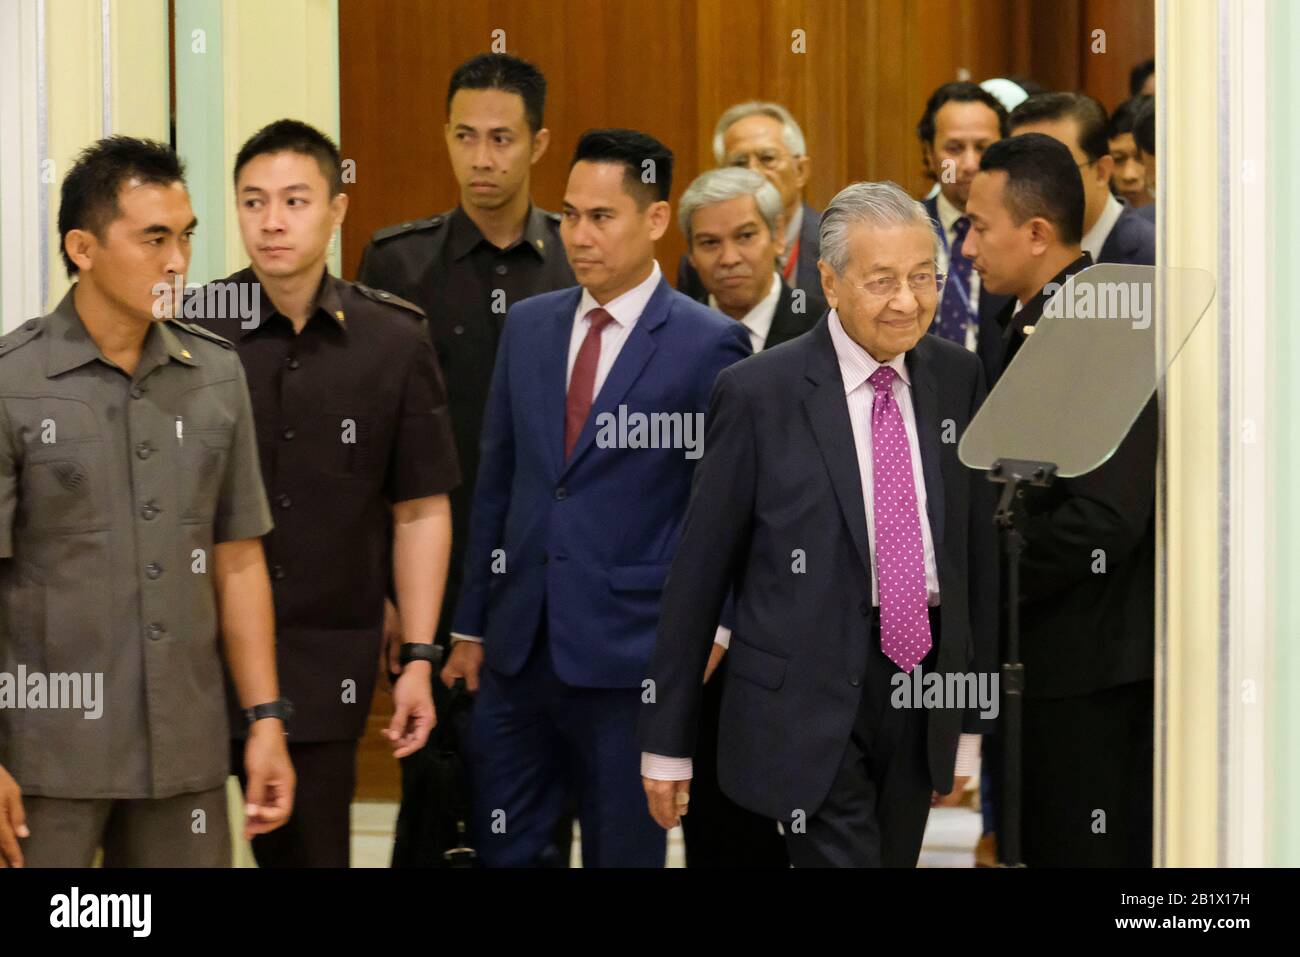 Malaysia Interims-Premierminister, Tun Dr. Mahathir Mohamad während der Zeremonie im Rahmen des Wirtschaftspakets 2020 in Malaysia in Putrajaya.Malaysia hat Einnahmen von mehr als 20 Milliarden als Konjunkturpaket, um Bedenken hinsichtlich der Auswirkungen des Covid-19-Virus-Ausbruchs zu zerstreuen. Das Konjunkturpaket wird sich auf Tourismus, Investitionen und Konsum konzentrieren, um die Inlandreise anzukurbeln. Stockfoto